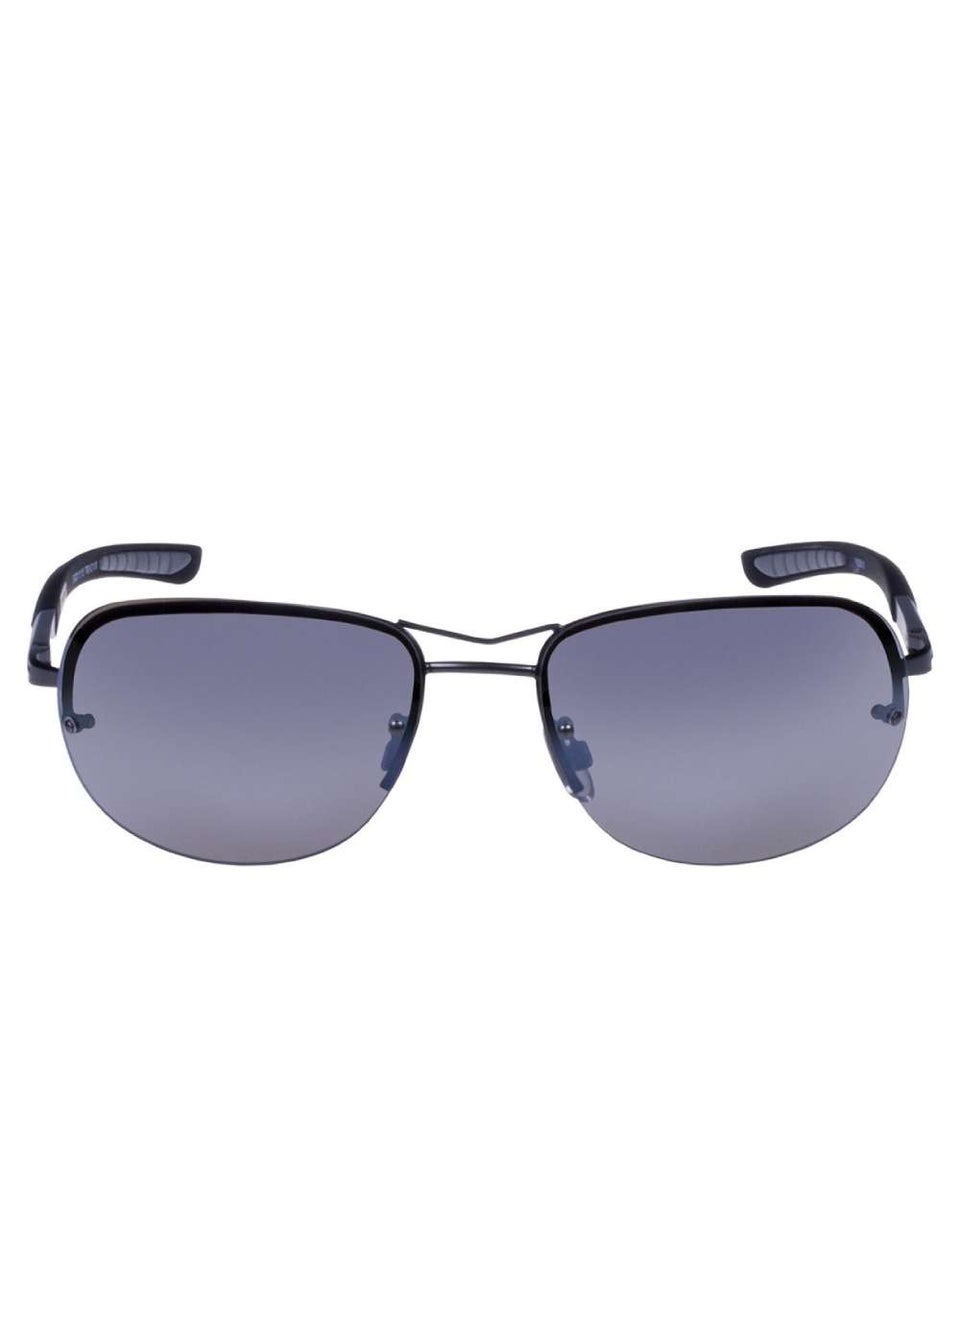 EyeLevel Accelerate Polarized Driving Sunglasses – Eyelevel-UK